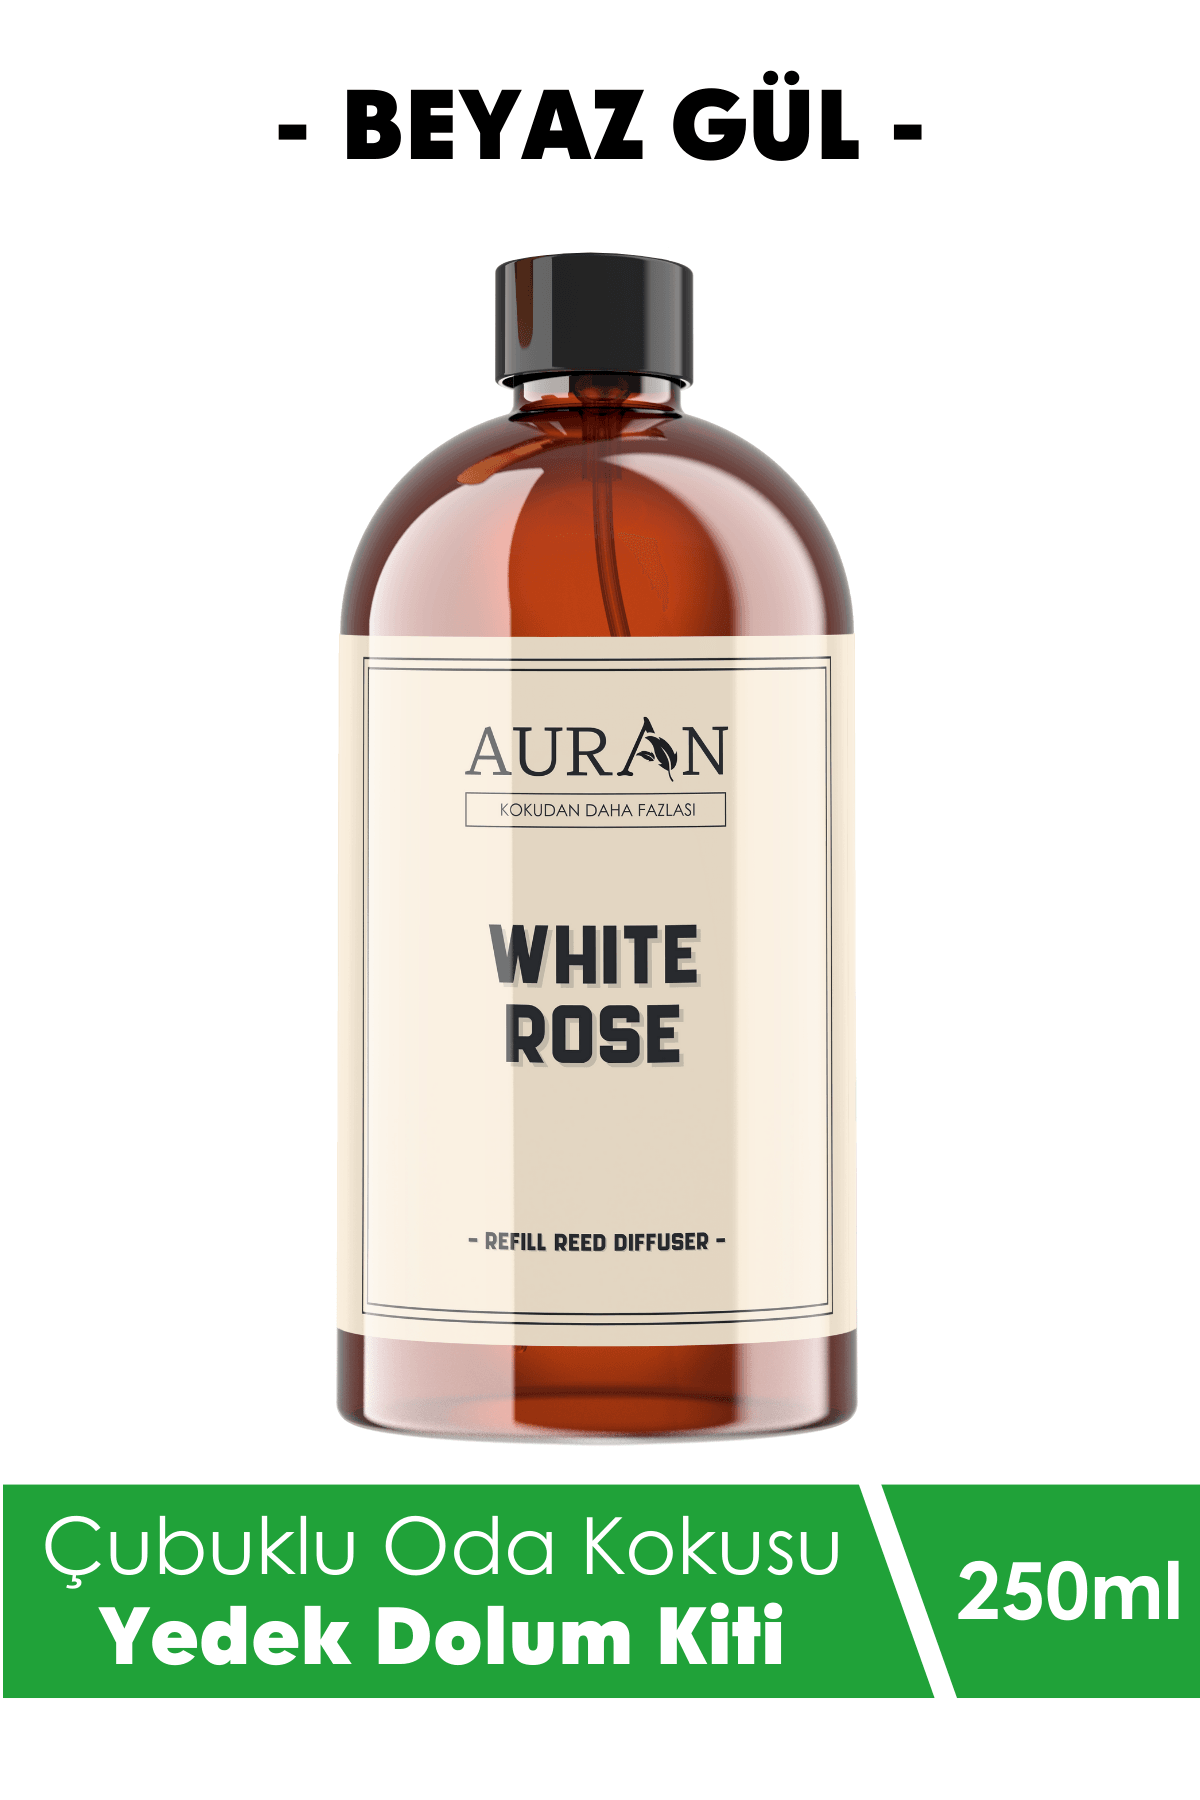 Beyaz Gül Yedek Çubuklu Oda Ve Ortam Kokusu Esansı Yedek Dolum Şişe White Rose 250ml